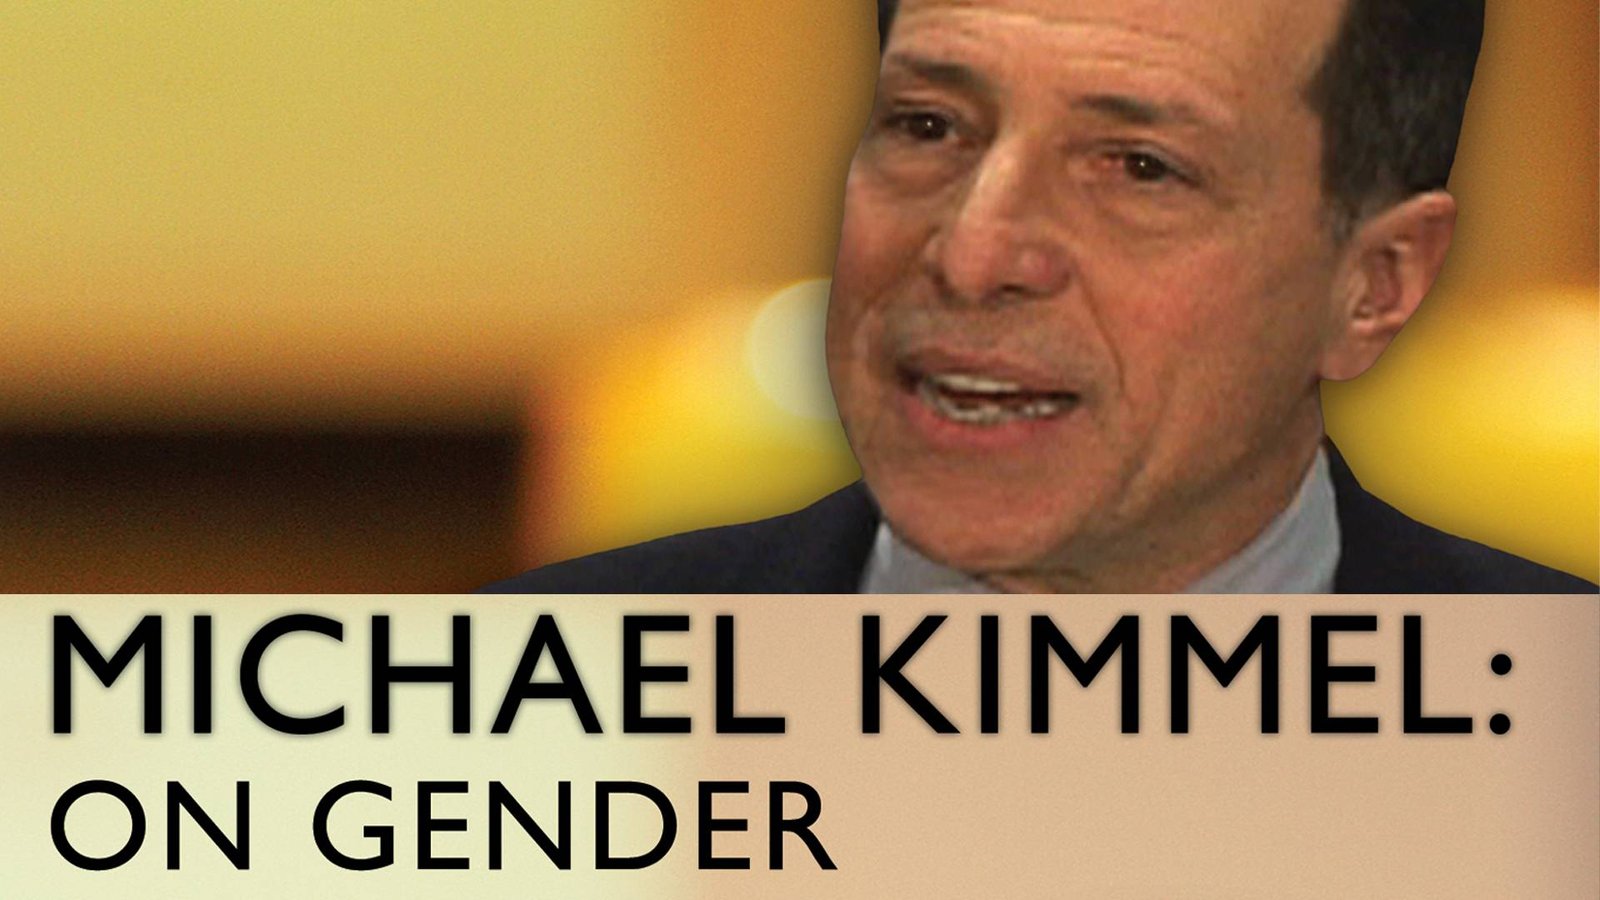 Michael Kimmel: On Gender